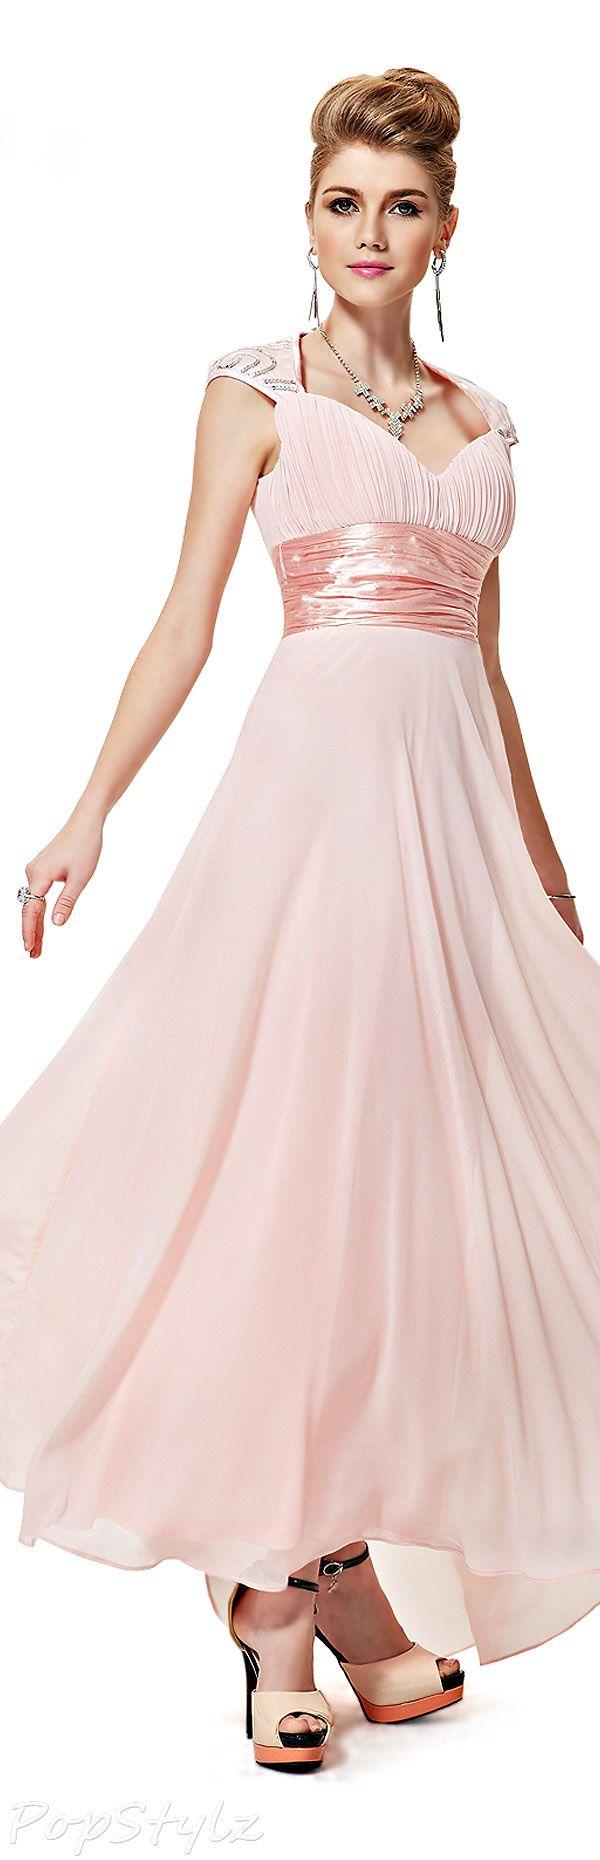 زفاف - Gowns.....Pastel Pinks